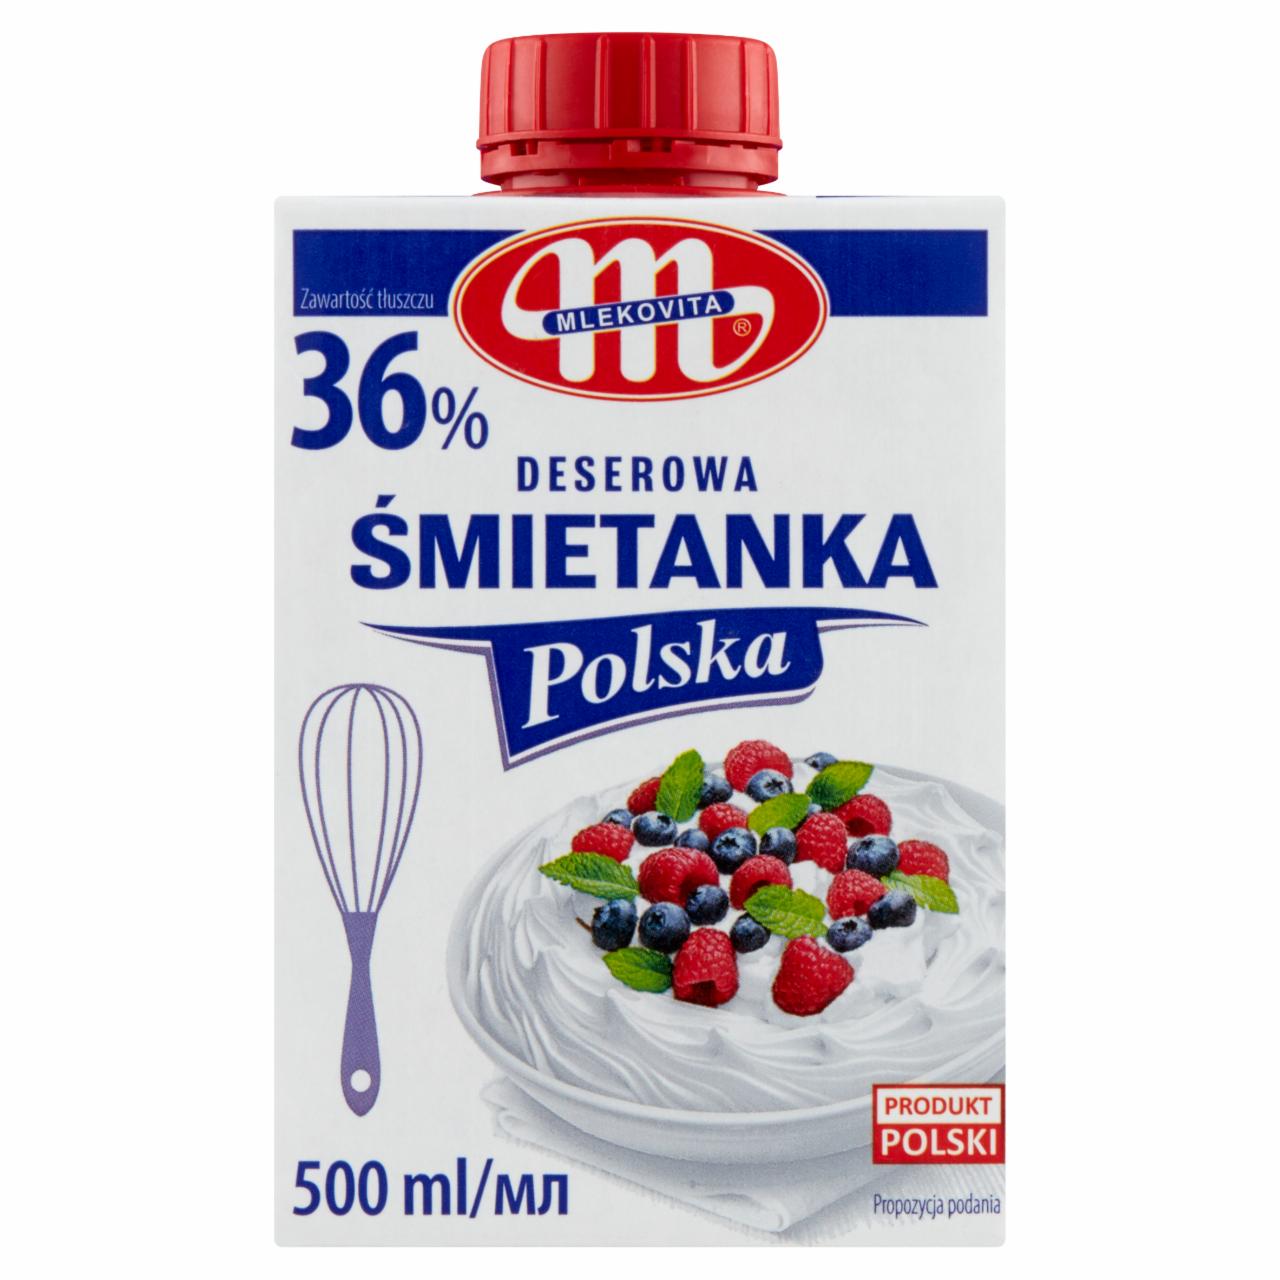 Zdjęcia - Mlekovita Śmietanka Polska deserowa 36 % 500 ml